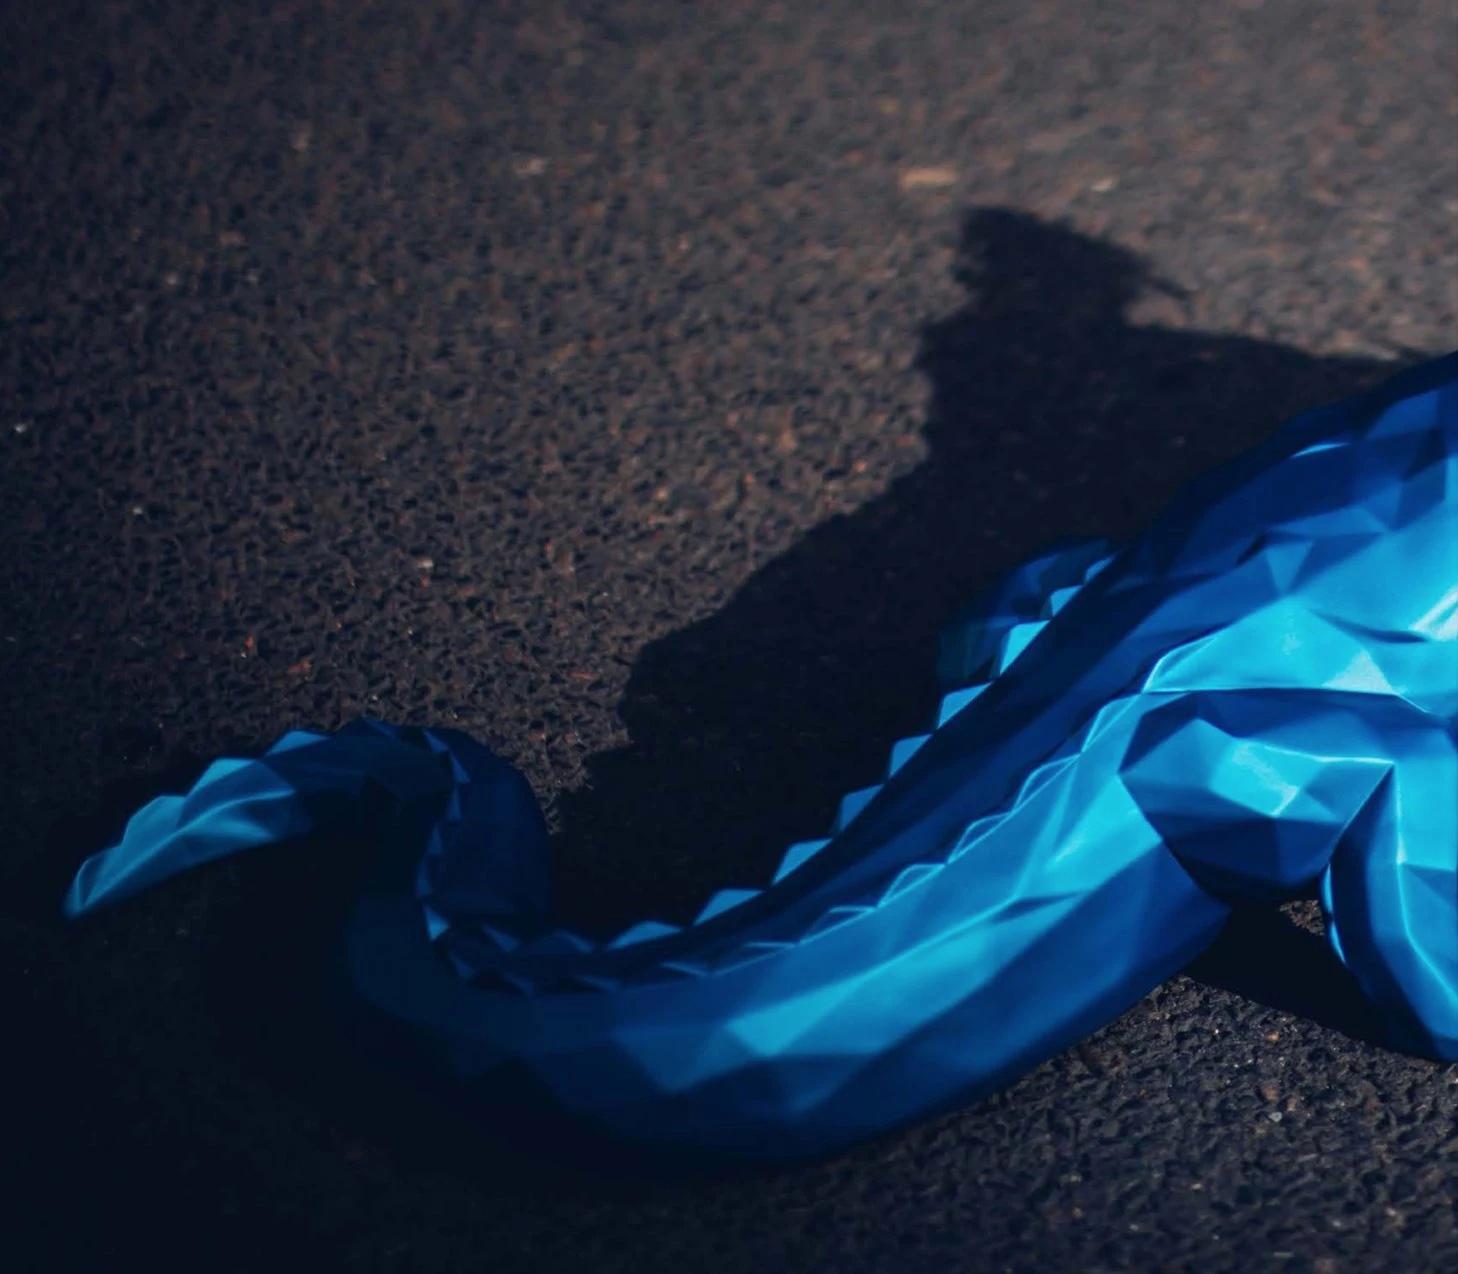 Richard Orlinski
43.3 x 17.7 x 17.7 pouces
Crocodile, Bleu Galactique
Sculpture en résine *Dimensions et couleurs supplémentaires disponibles 
Signé et numéroté par l'artiste
Edition de 8

Actuellement exposé à Art Angels Los Angeles